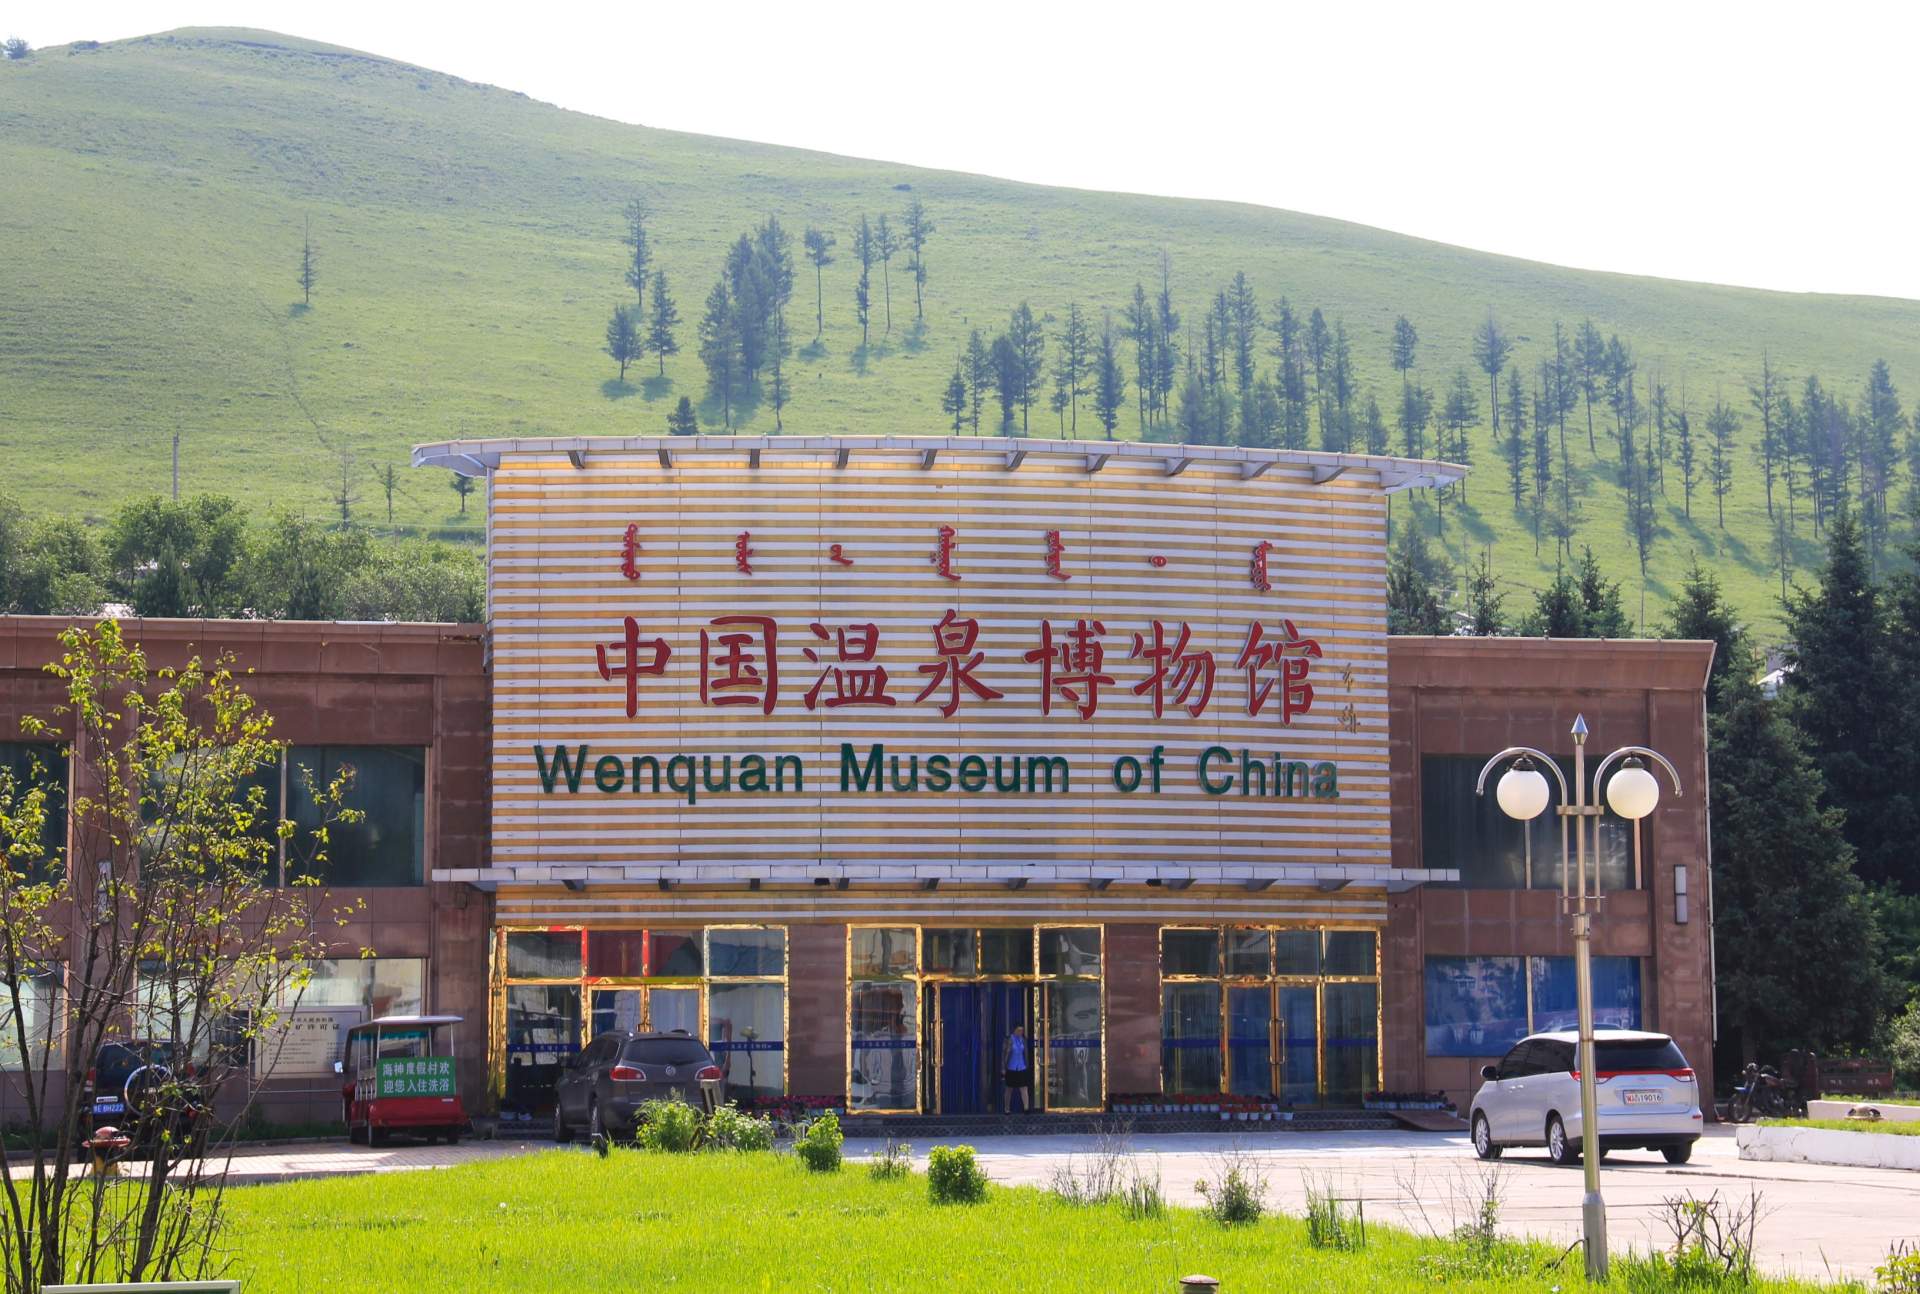 モンゴル文字、漢字、アルファベットの3つの文字で「中国温泉博物館」と表記されています